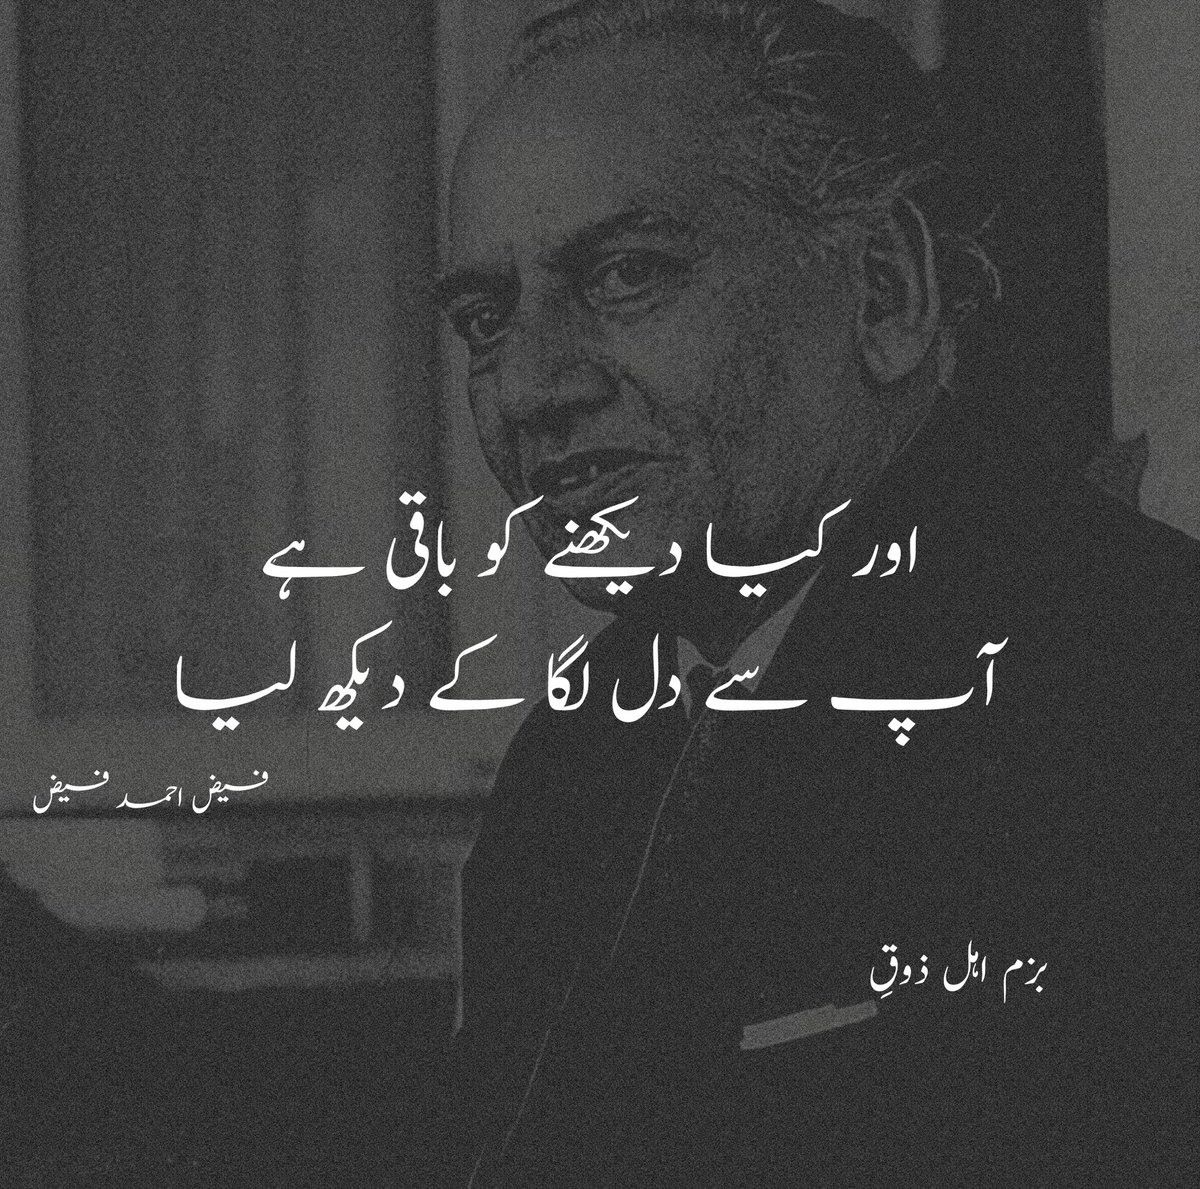 اور کیا دیکھنے کو باقی ہے آپ سے دل لگا کے دیکھ لیا . . #اردو_زبان #Urdu #اردو_شاعری @BazamAhlyZooq